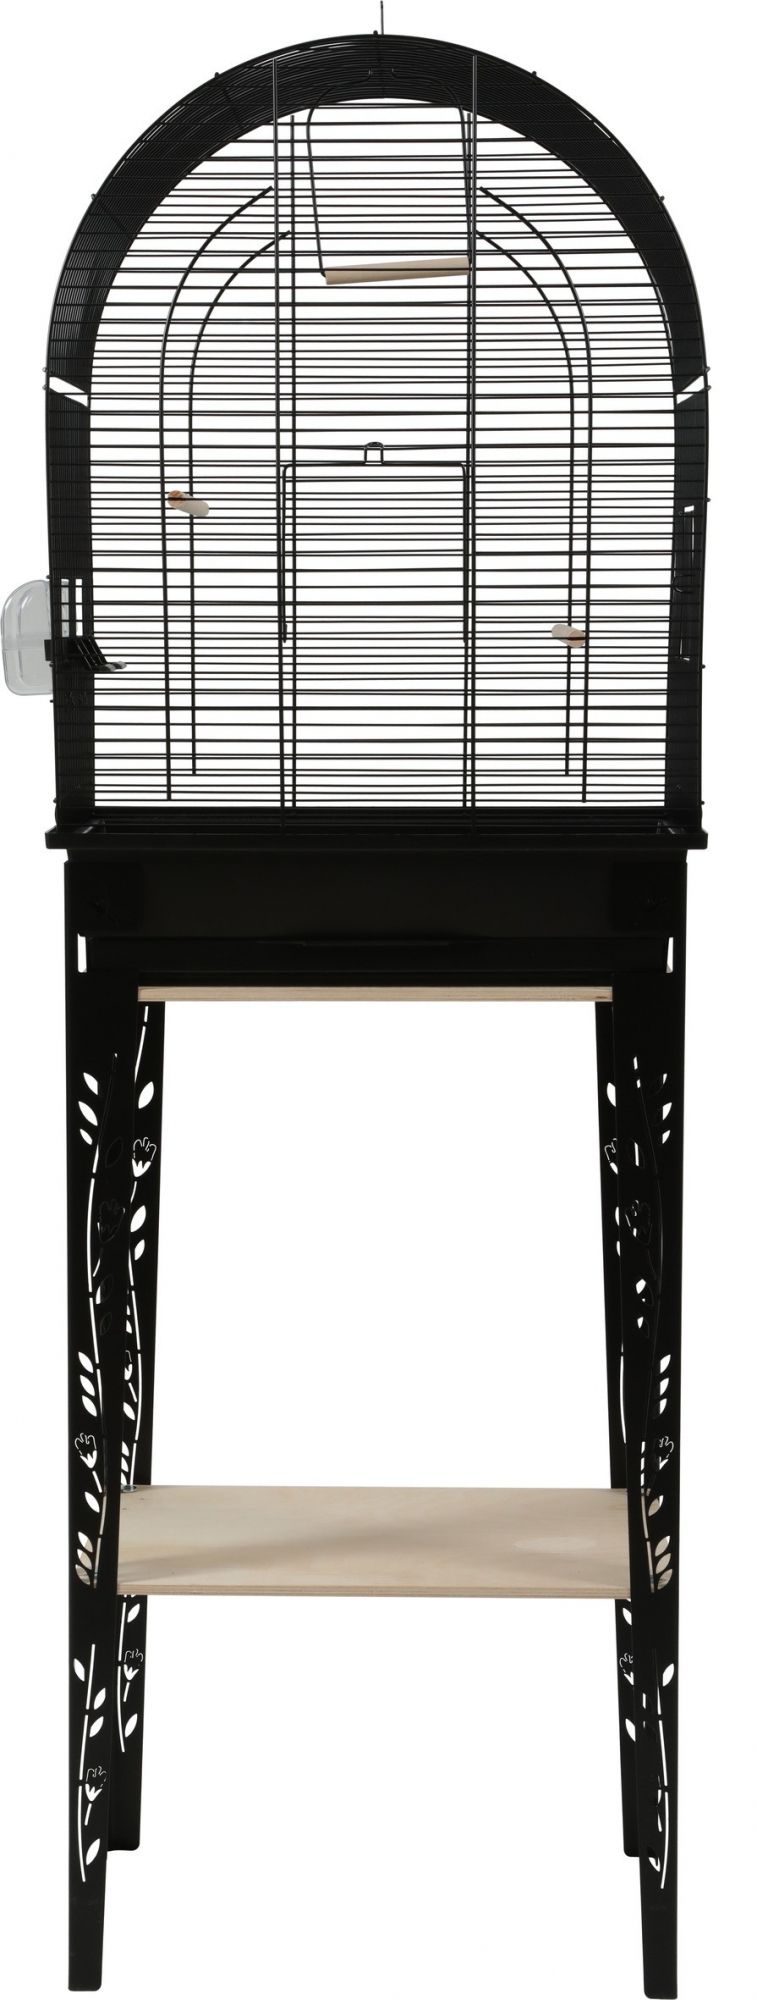 Jaula pájaros con mueble Chic Patio - Negro - 3 tamaños disponibles